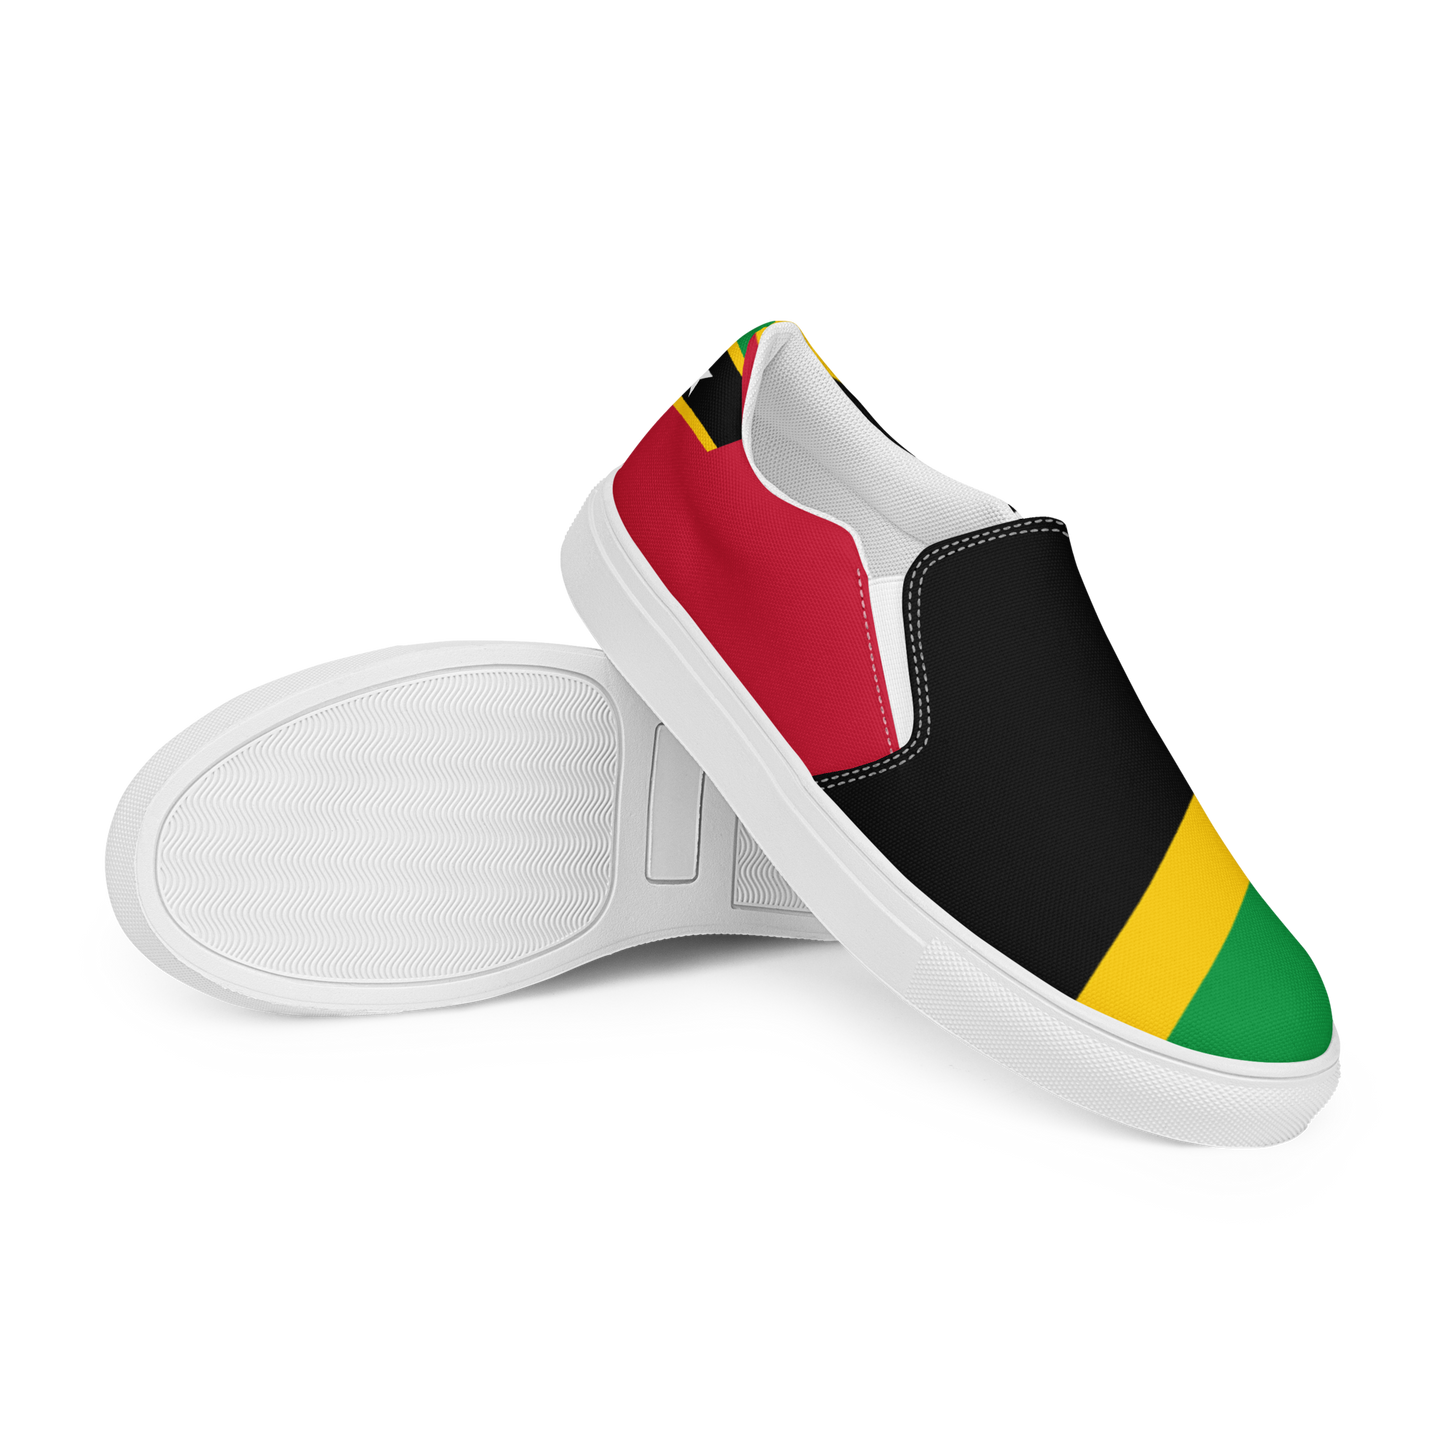 St. Kitts & Nevis Men’s slip-on canvas shoes